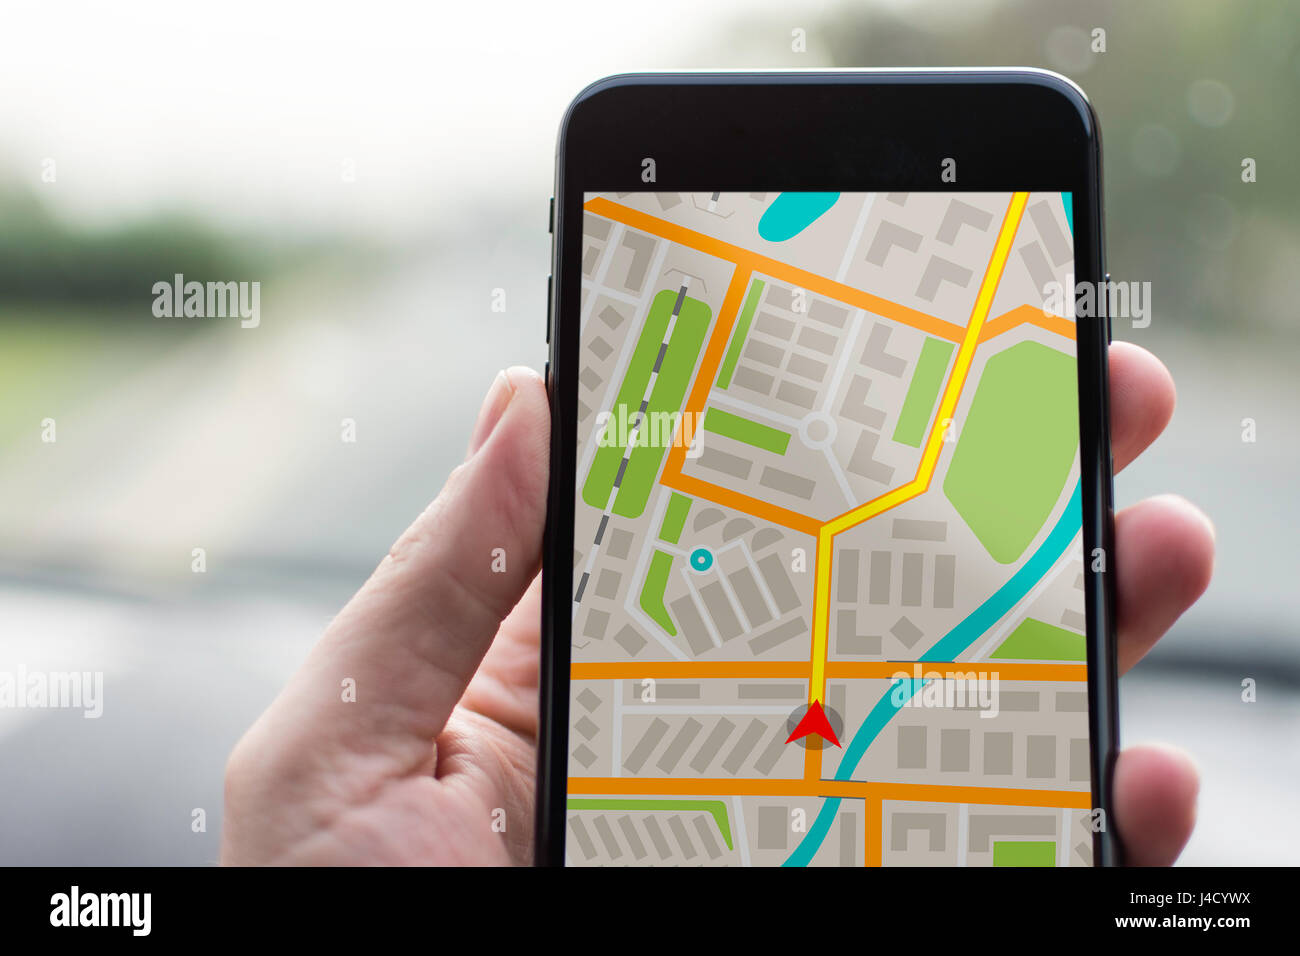 GPS-Navigation auf Handy-Gerät und Transportkonzept. Männliche Hand  Navigation System Parkplan Tracking auf Smartphone mit Textfreiraum  Stockfotografie - Alamy